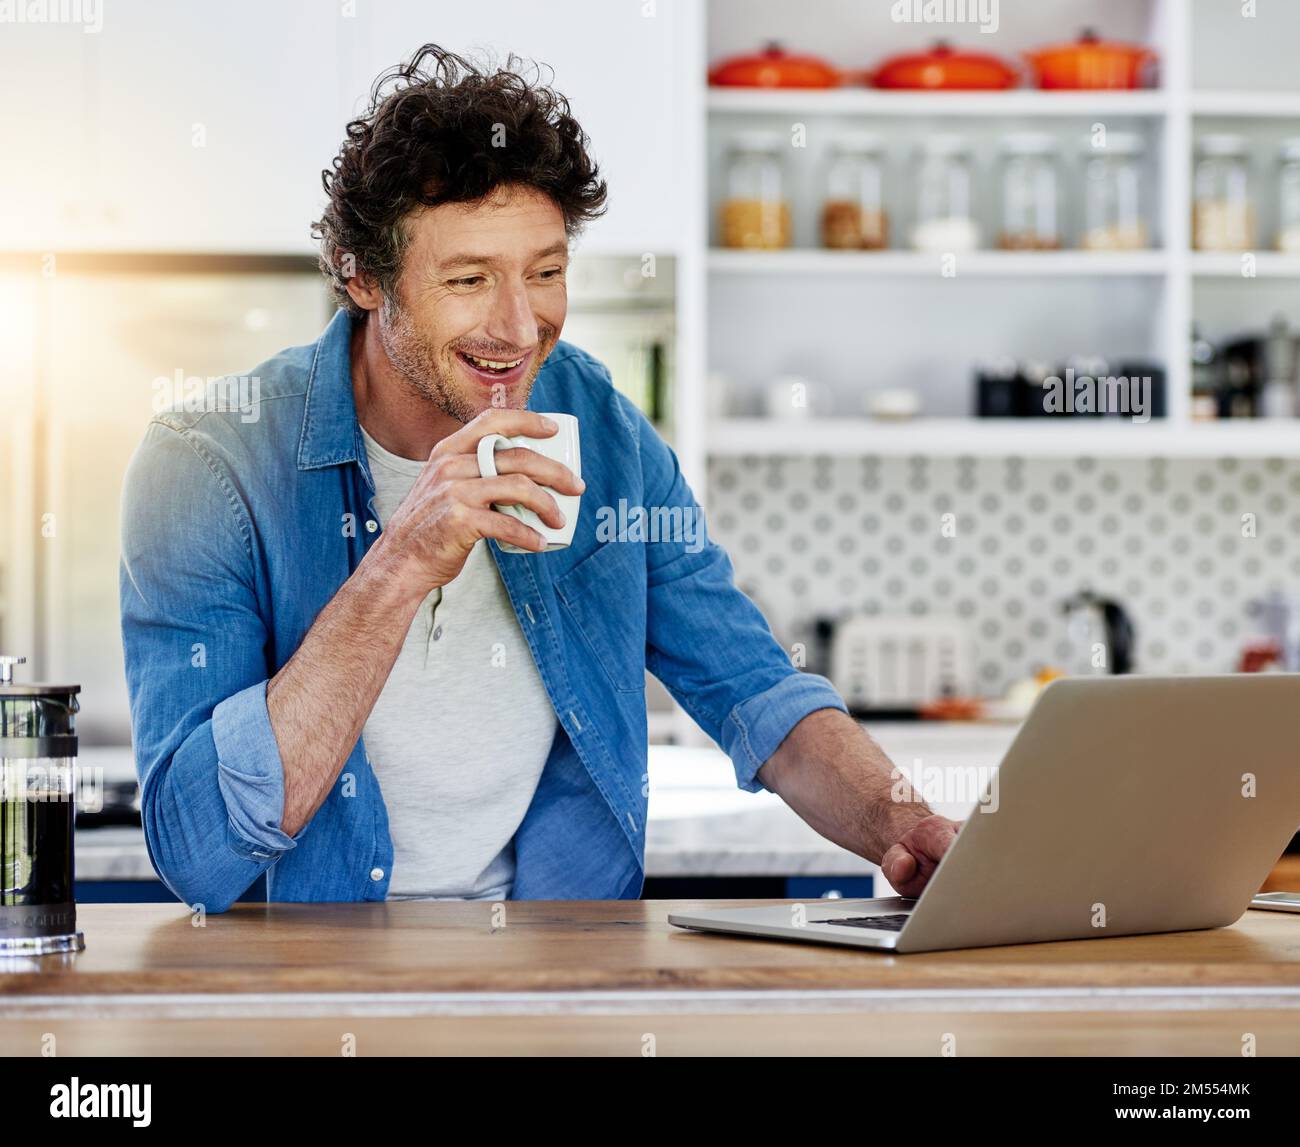 Kaffee und Internet - zwei seiner Lieblingssachen. Ein Junggeselle, der seinen Laptop benutzt, während er eine Tasse Kaffee in der Küche genießt. Stockfoto